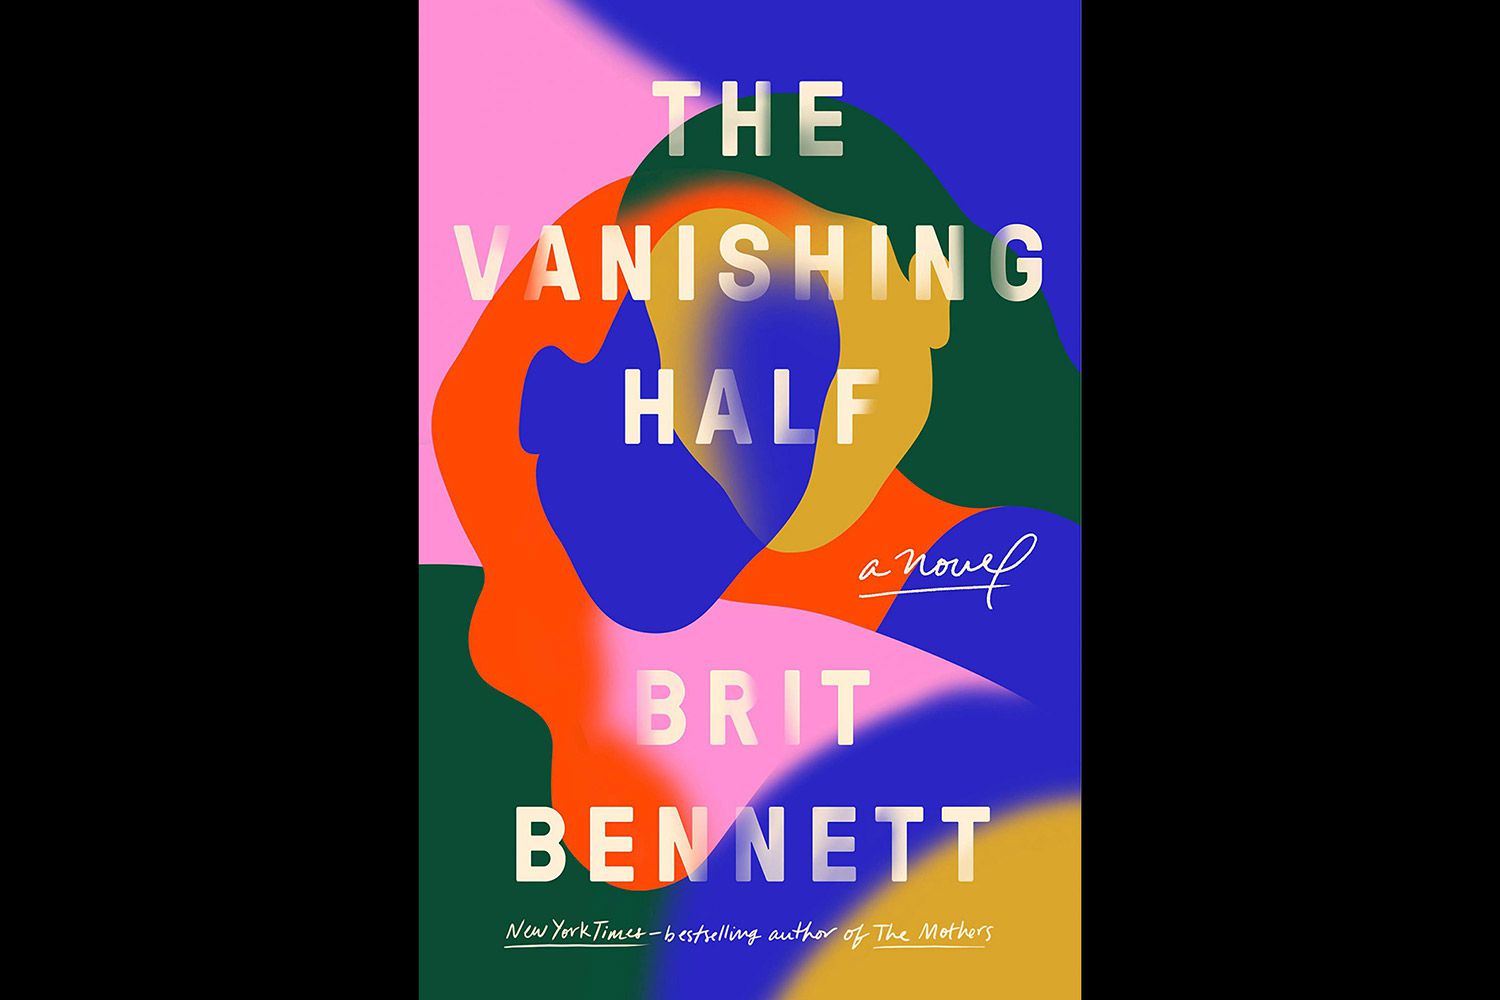 The Vanishing half